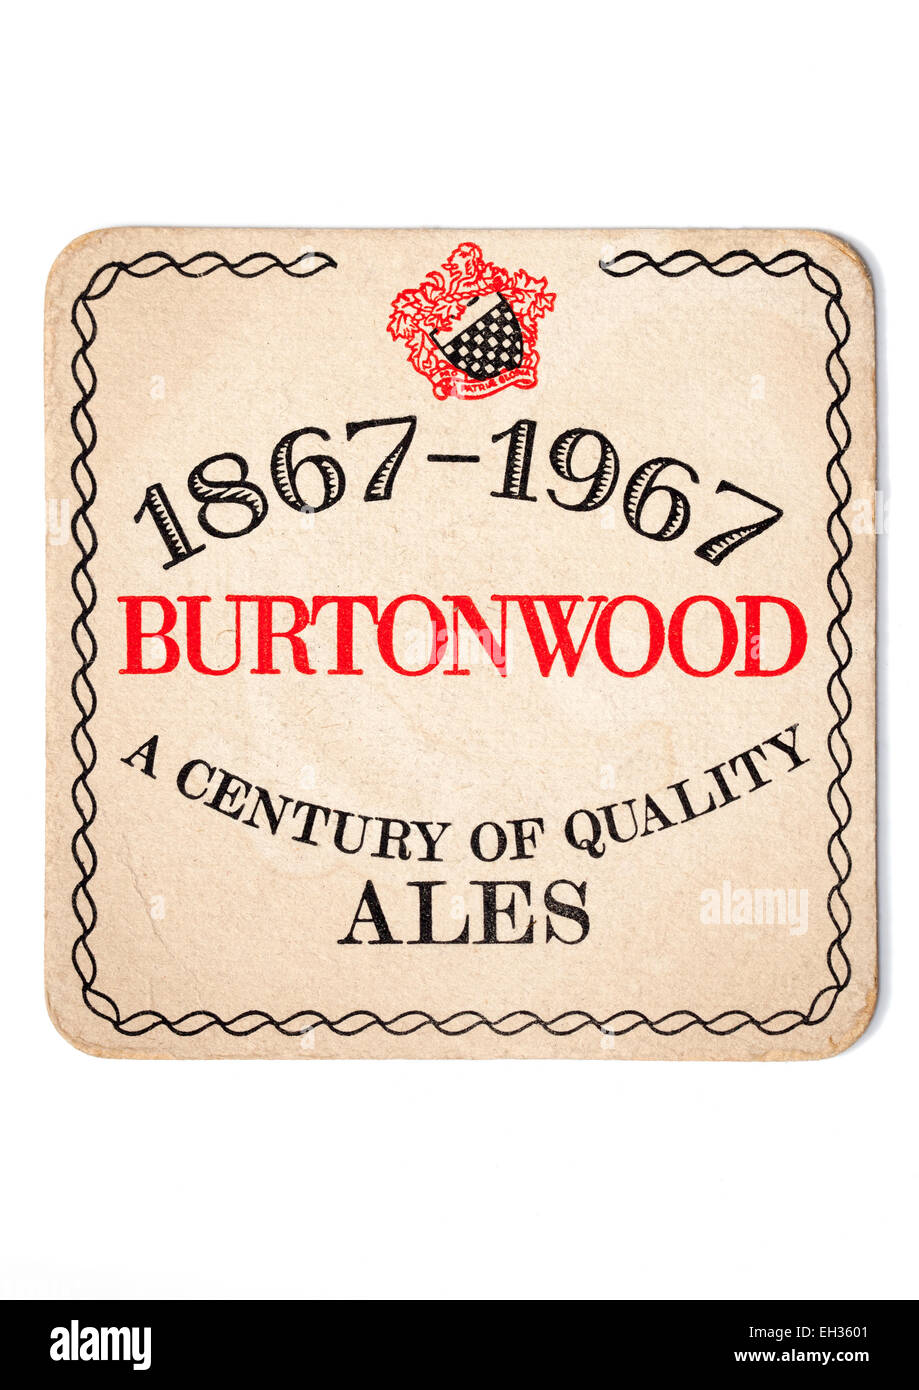 Vintage British Beermat Advertising Burtonwood Ales Stock Photo